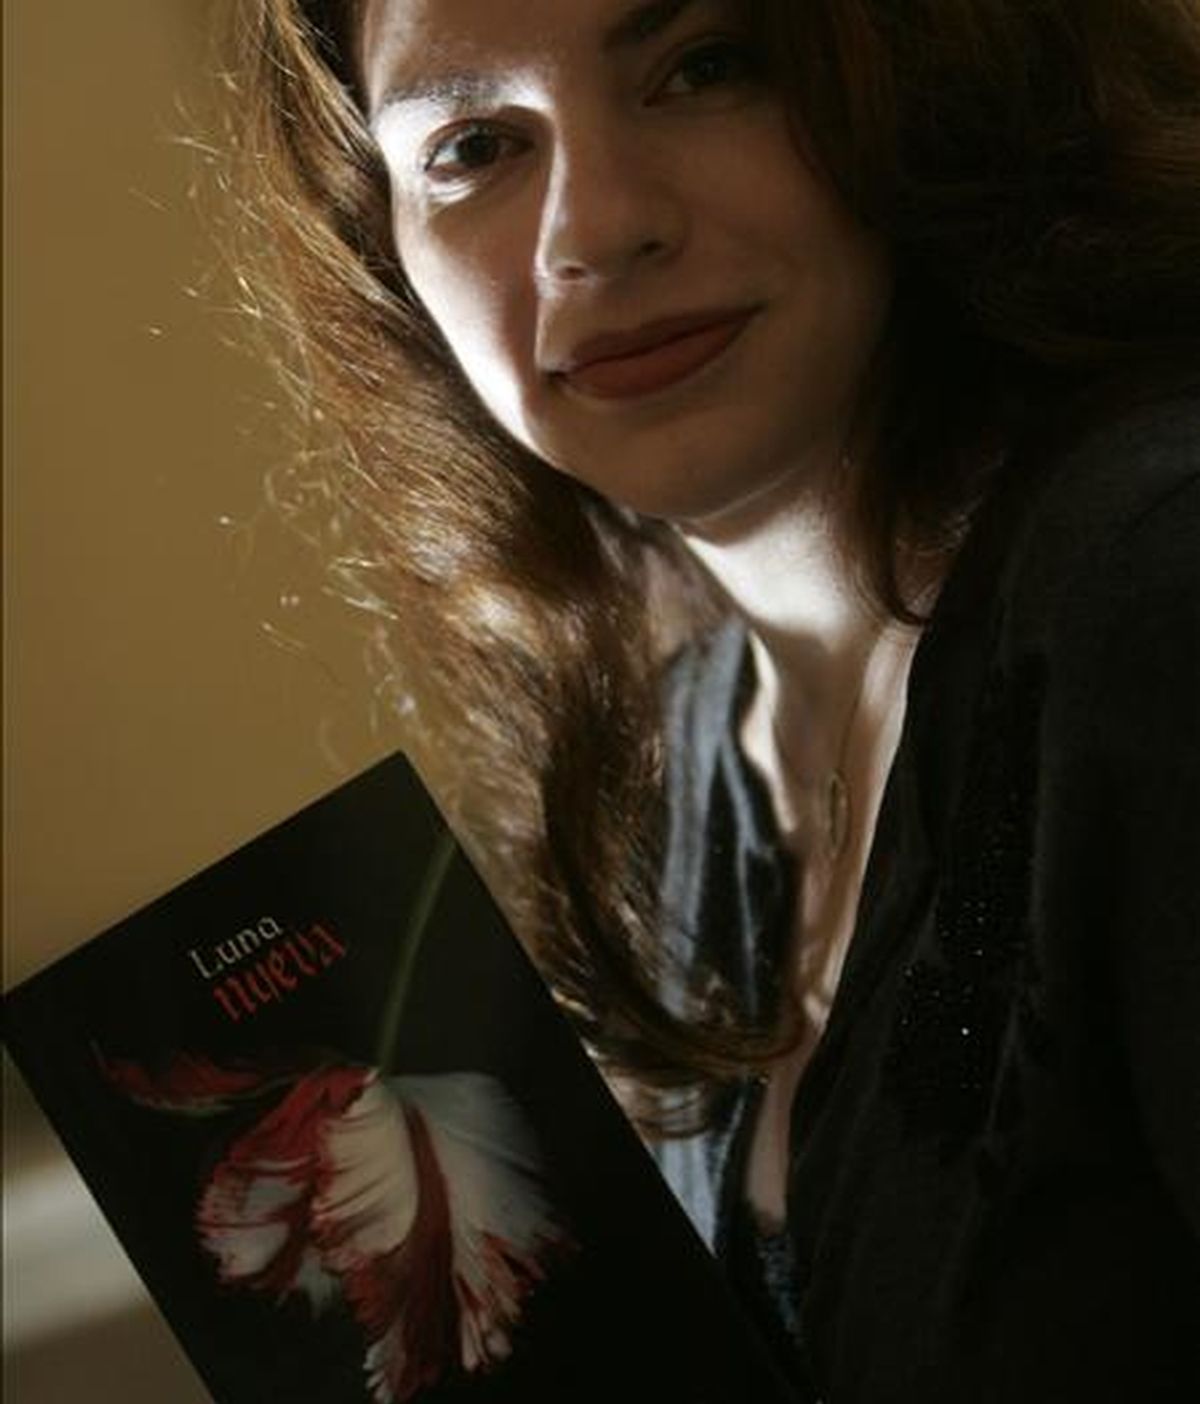 La escritora Stephanie Meyer posa con un ejemplar de su obra "Luna Nueva". EFE/Archivo